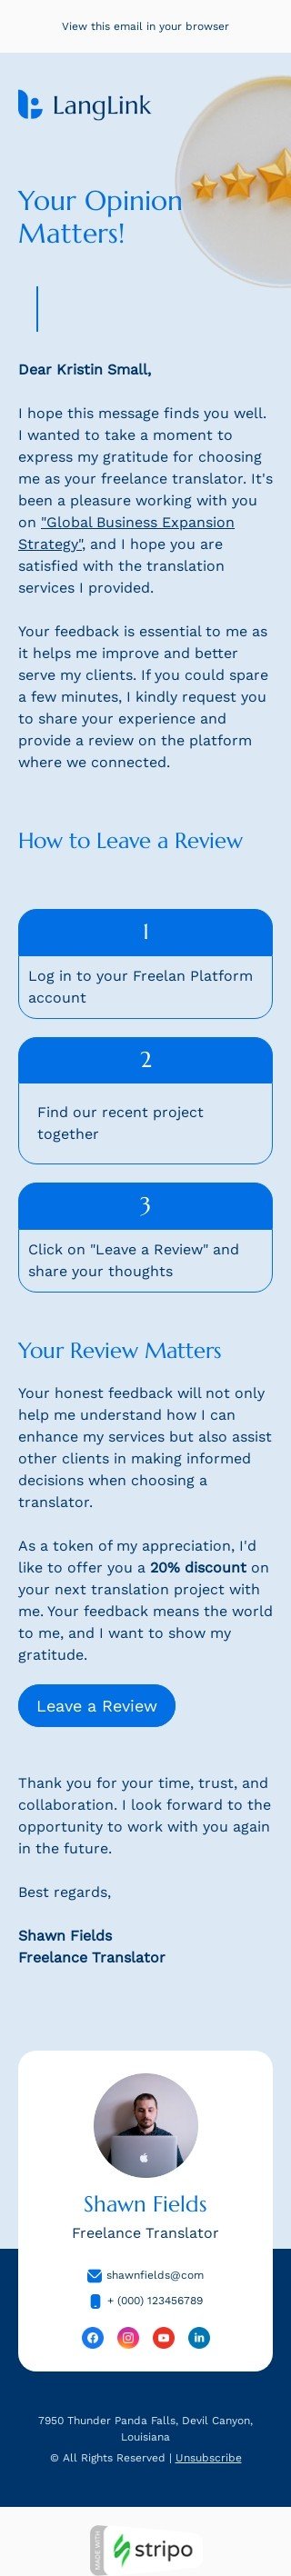 Modello email sondaggi e feedback «La tua opinione conta» per il settore industriale di traduzione Visualizzazione mobile